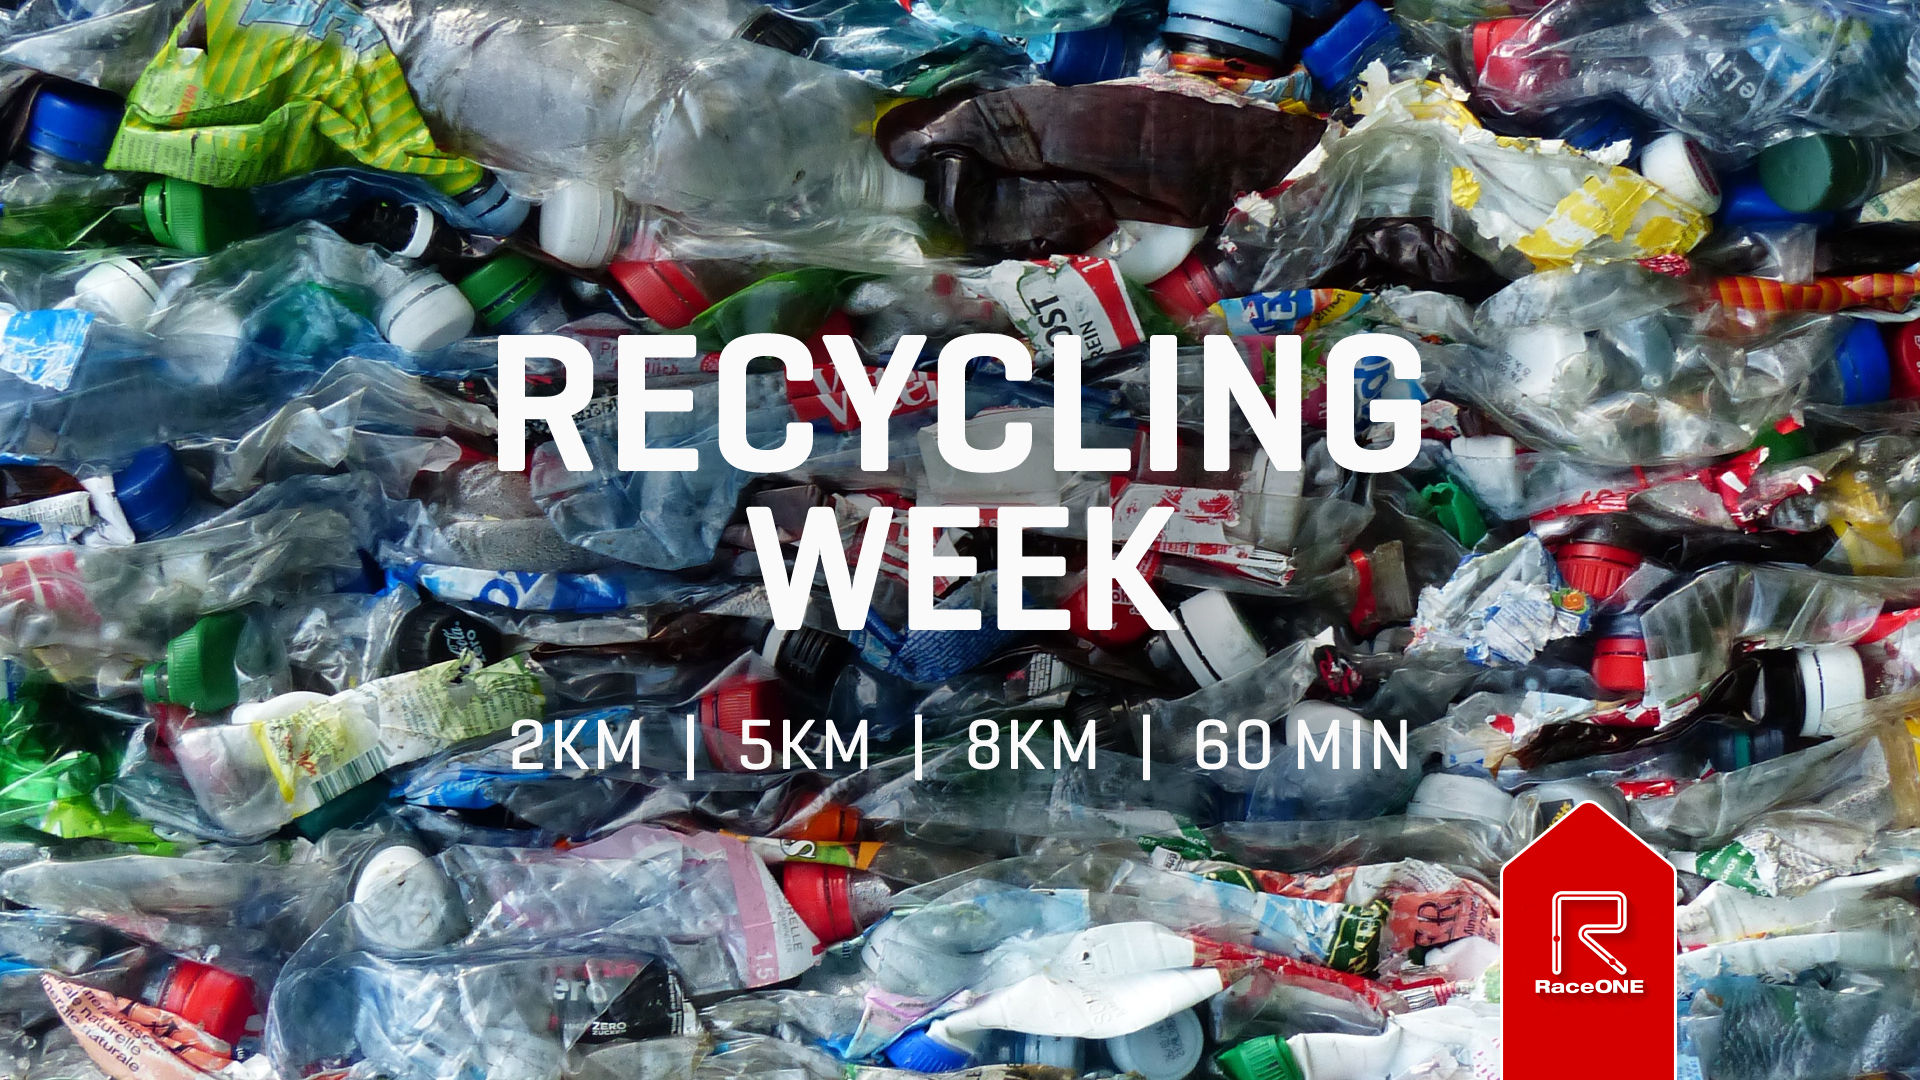 Recycle Week - 2km